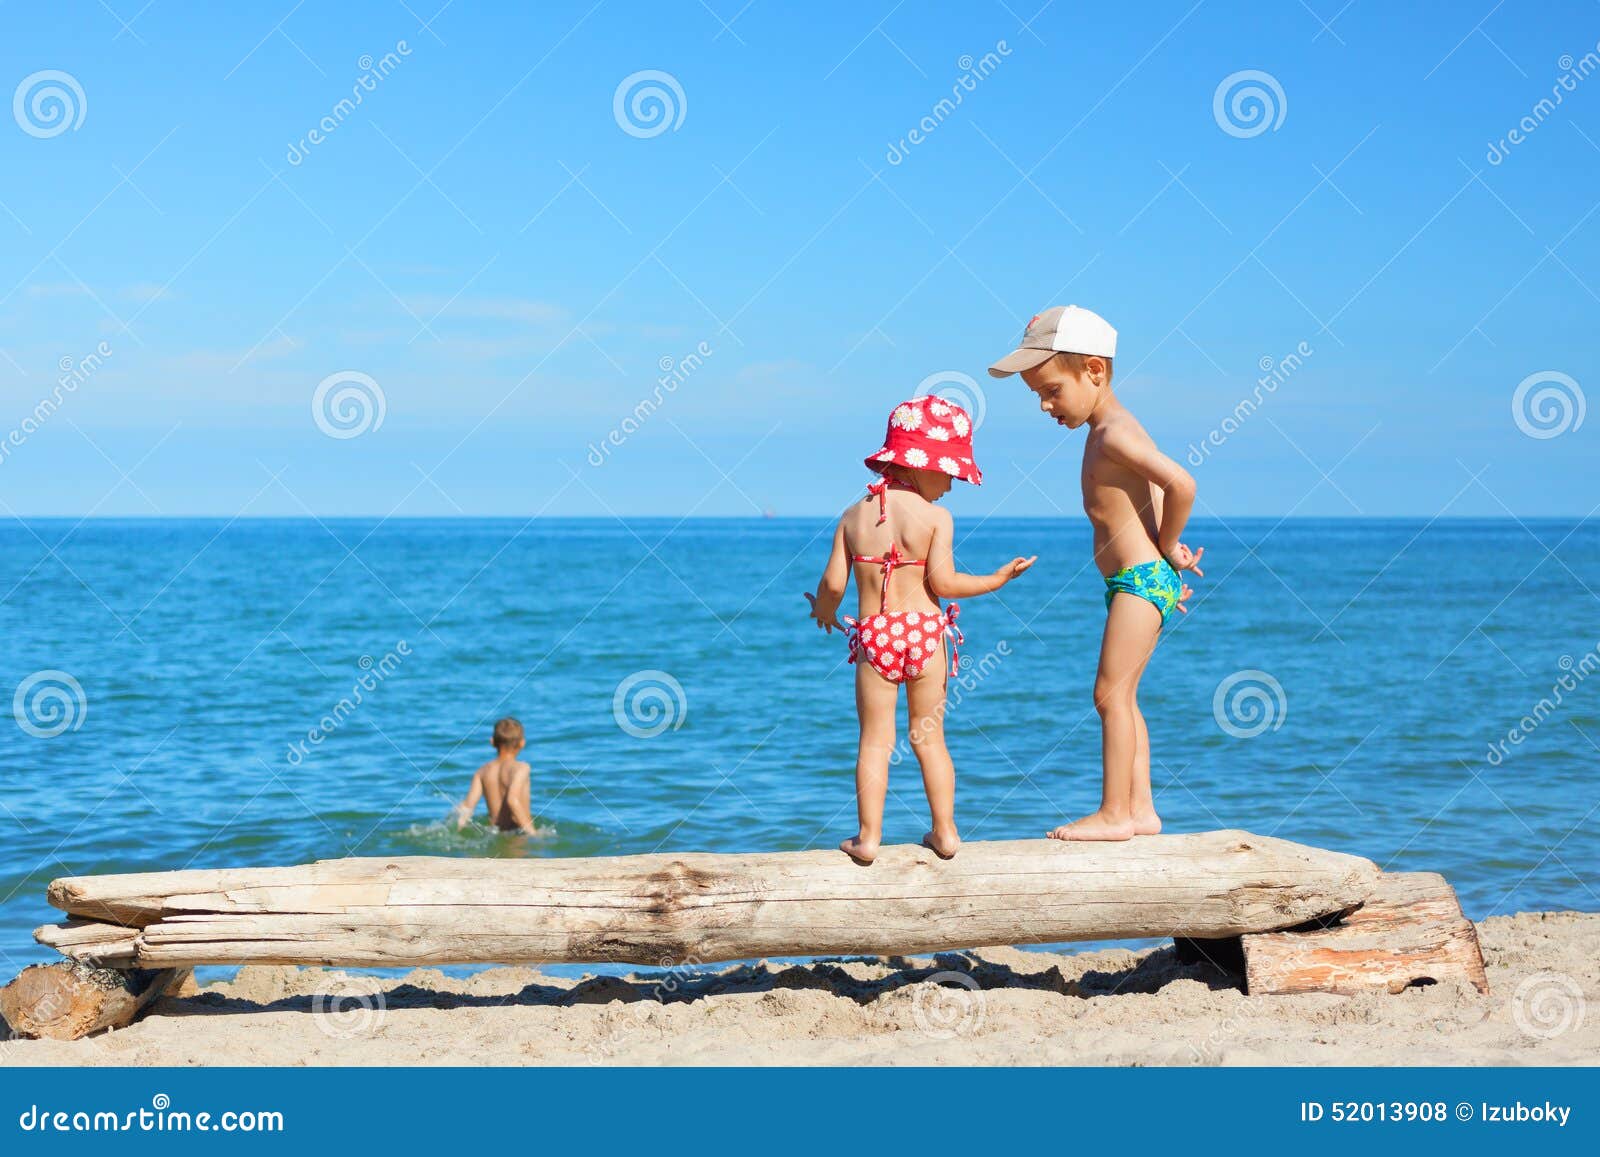 нудиский пляж с голыми детьми фото 16